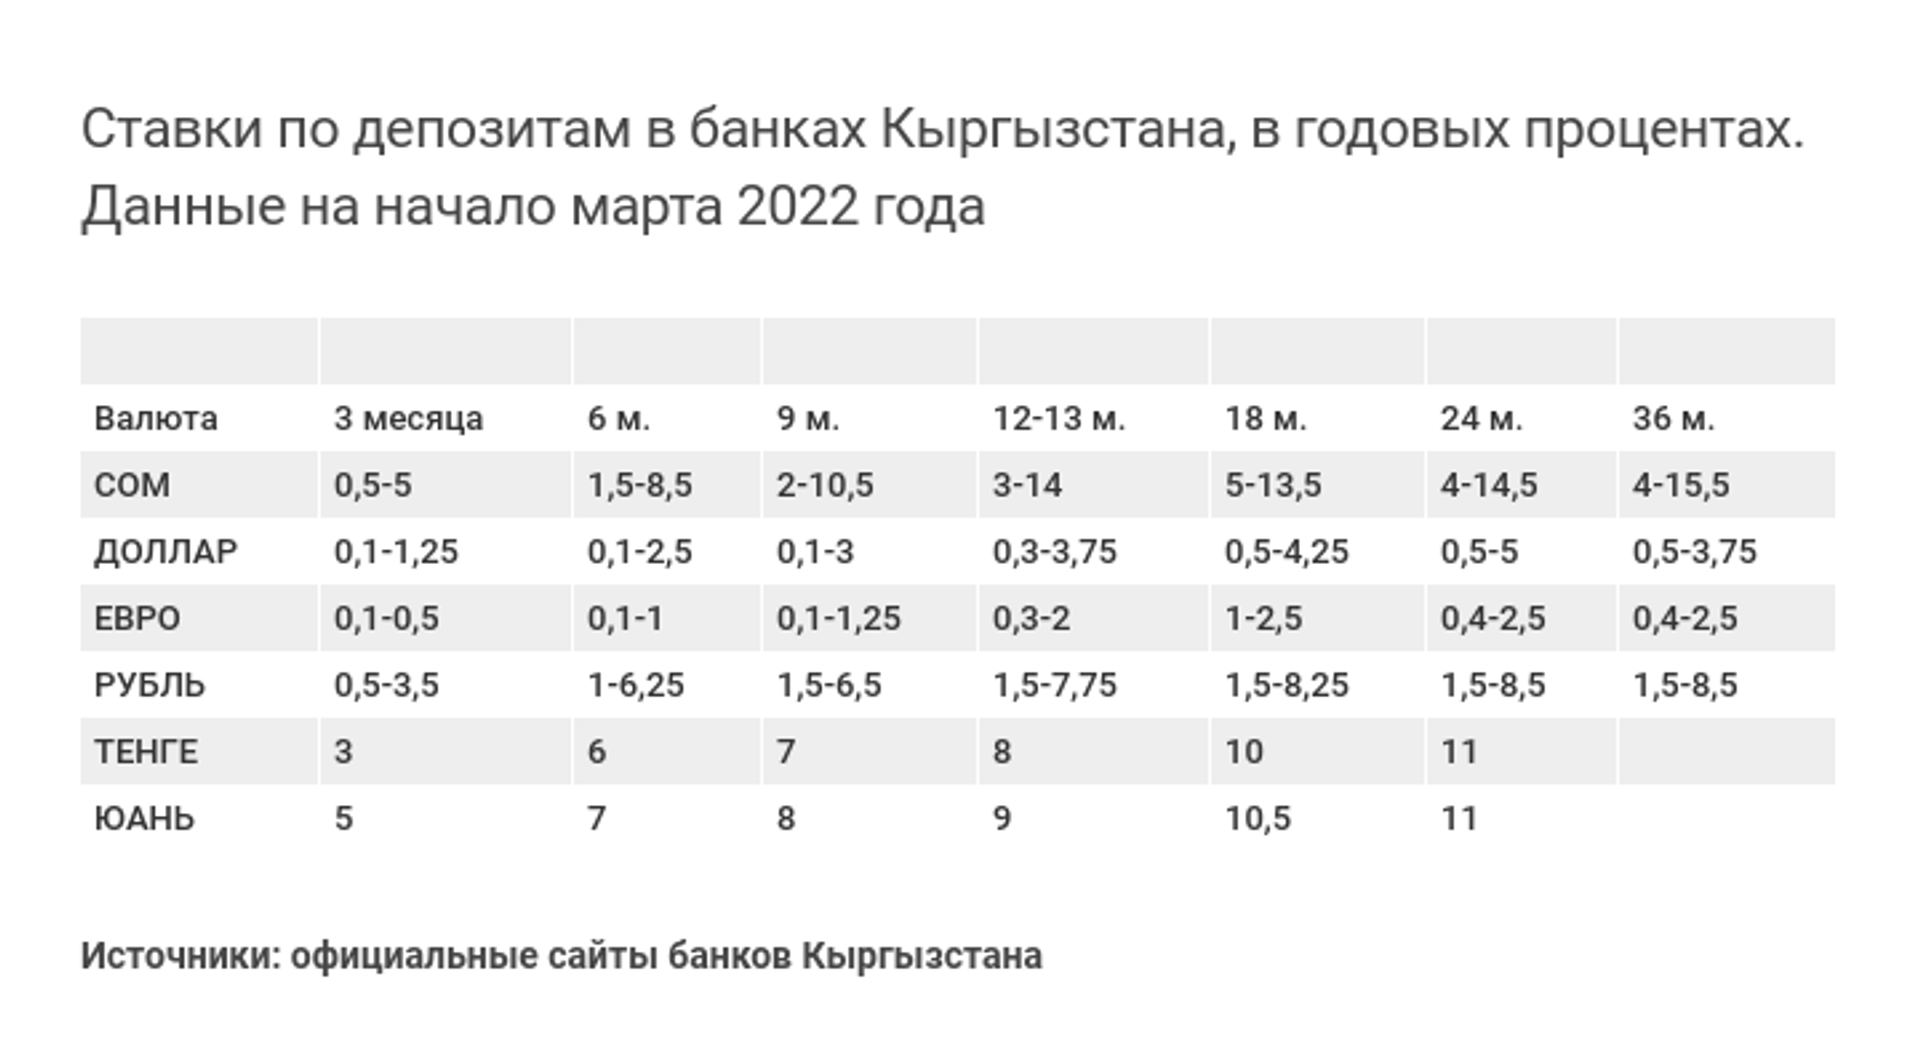 Ставки по депозитам в банках Кыргызстана, в годовых процентах. Данные на начало марта 2022 года - Sputnik Кыргызстан, 1920, 13.04.2022